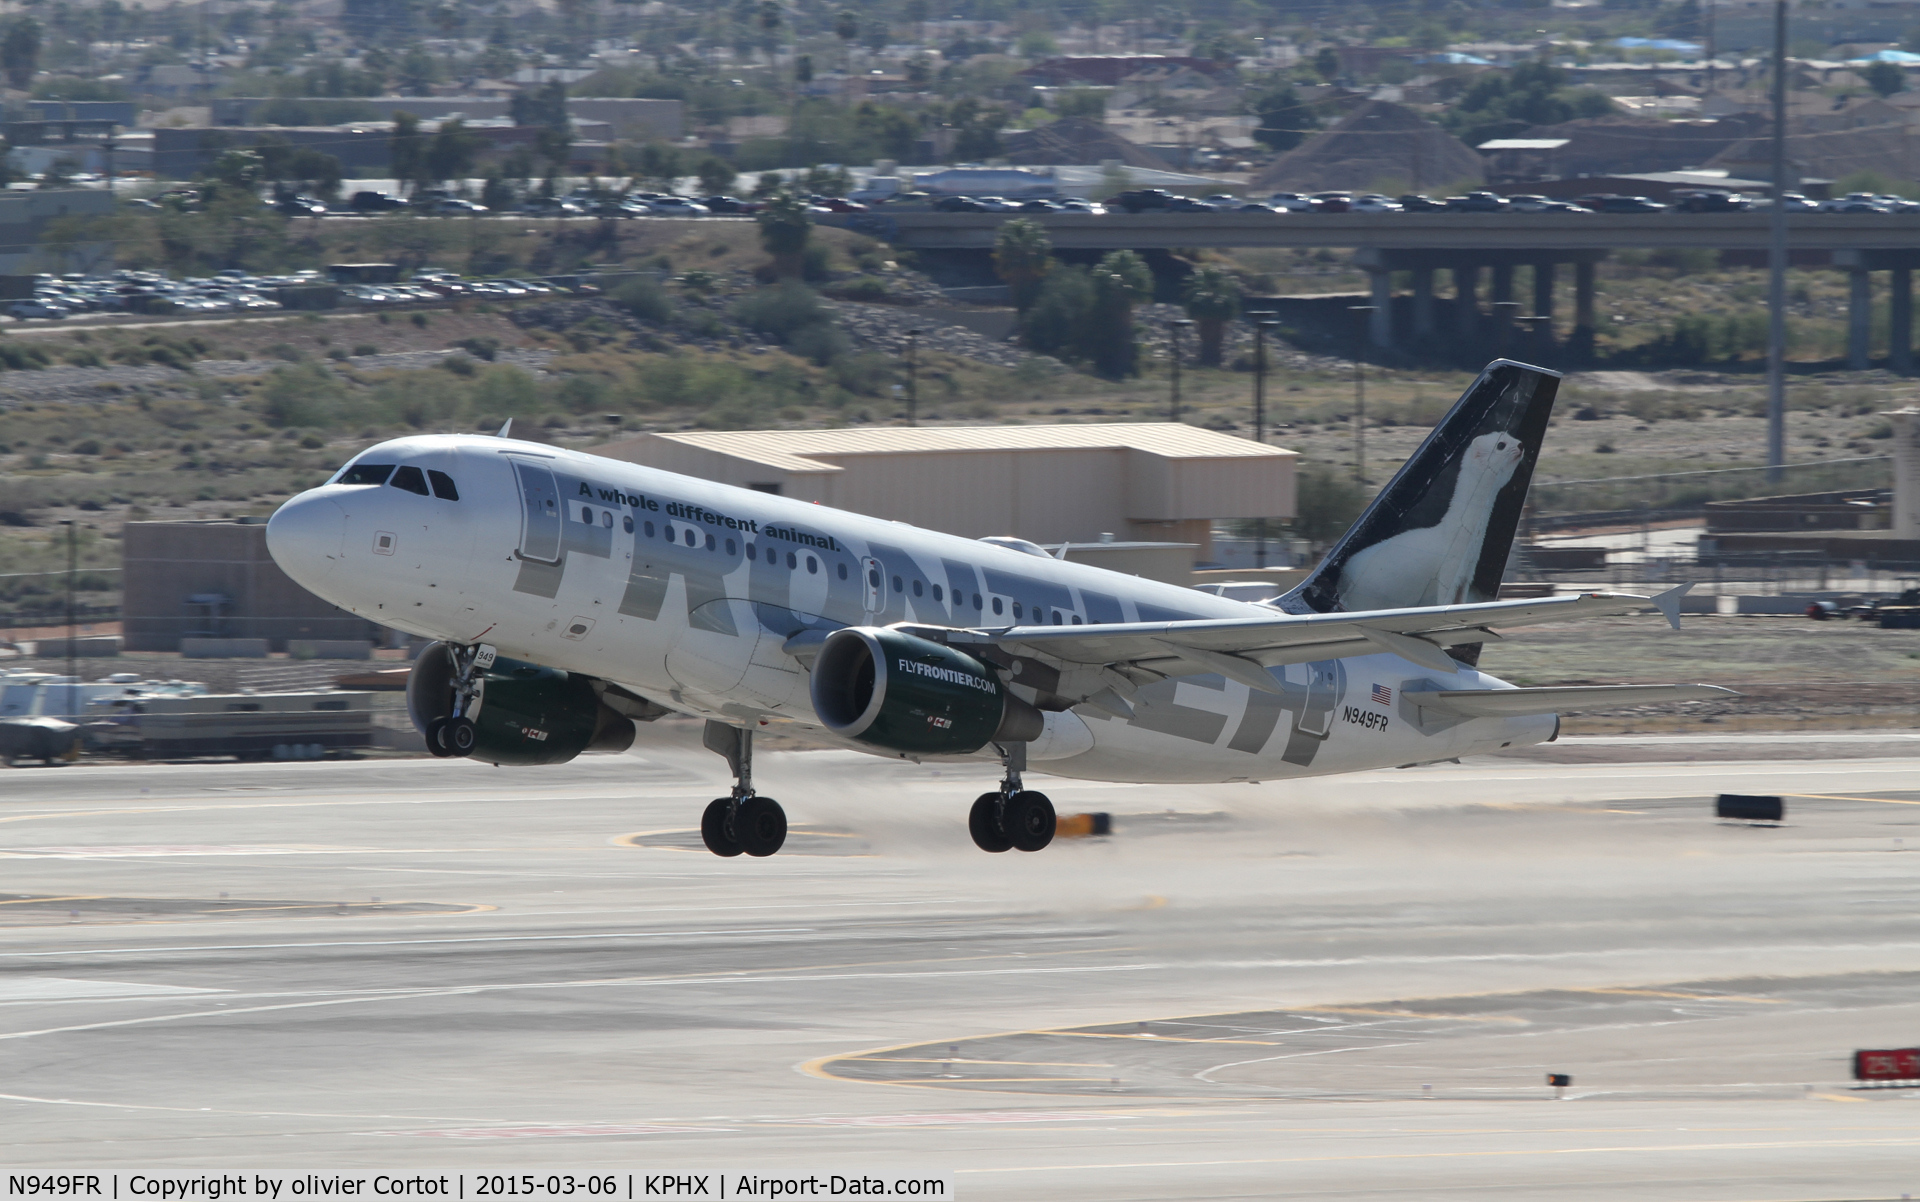 N949FR, 2006 Airbus A319-112 C/N 2857, leaving Phoenix